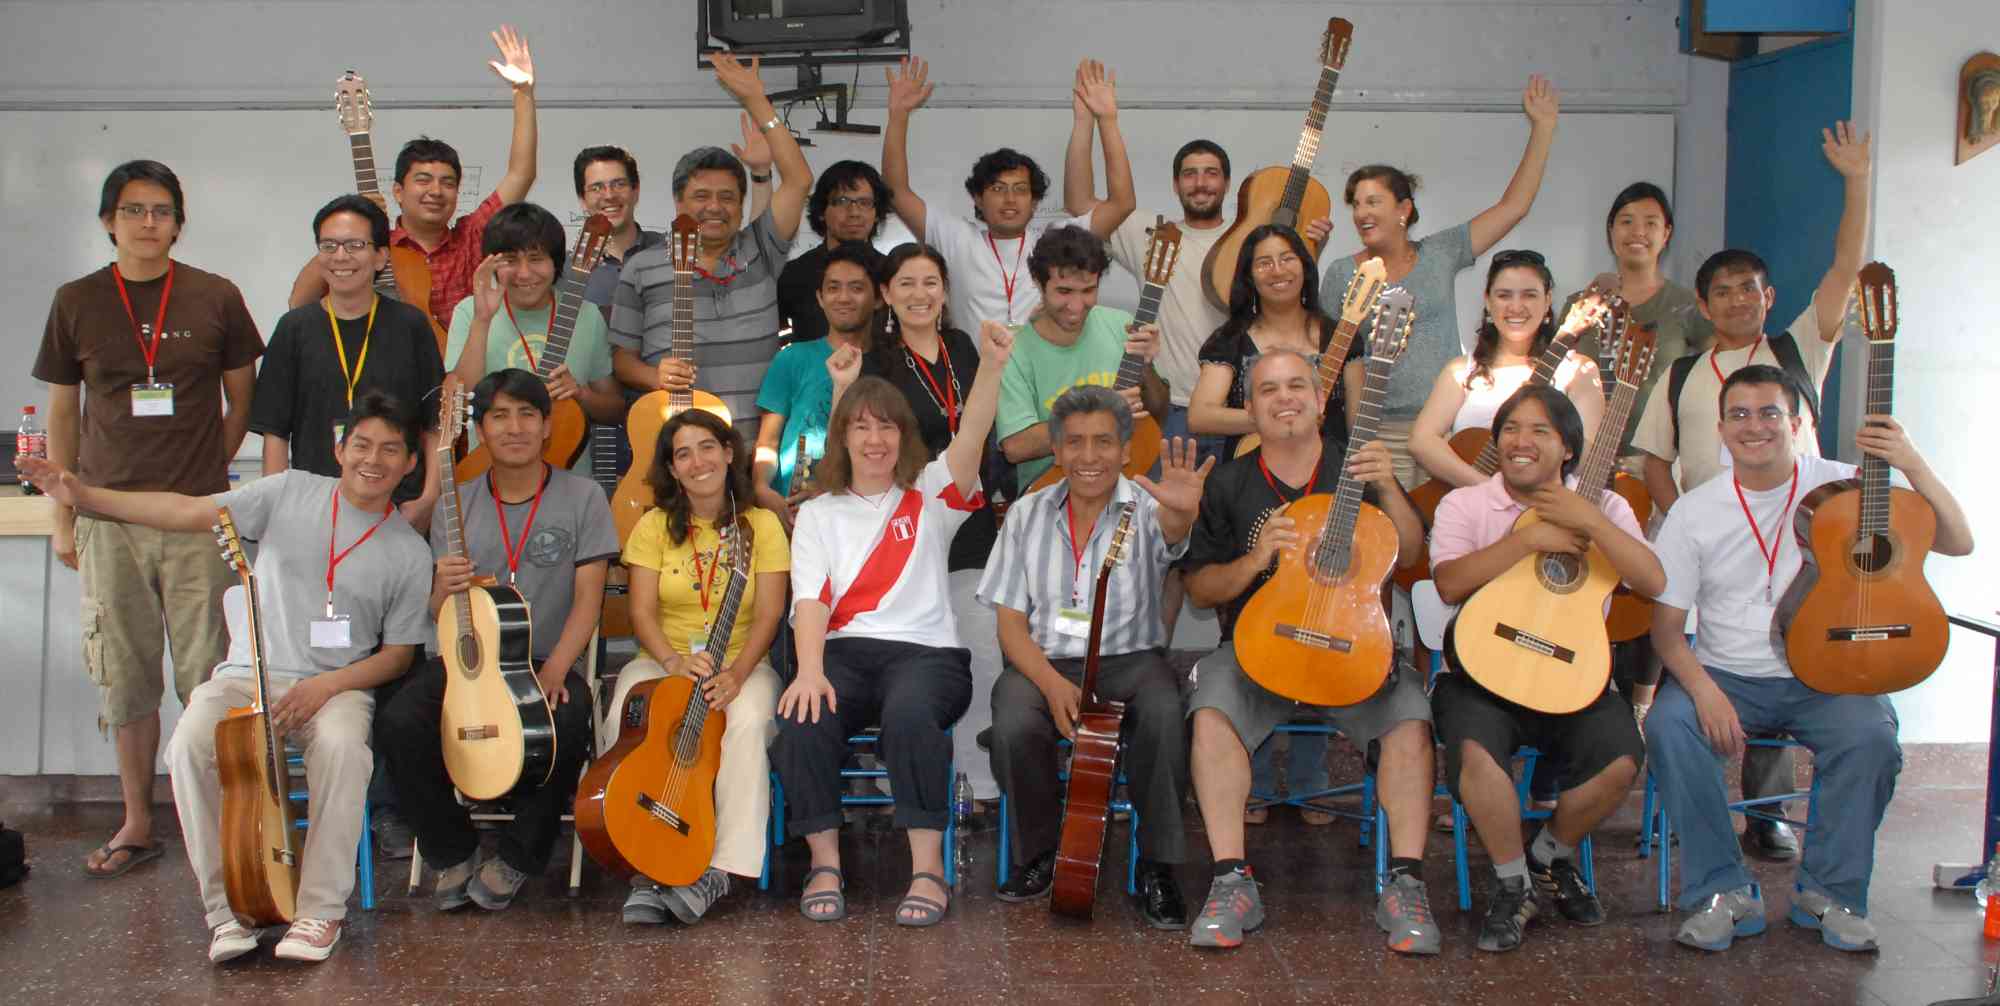 Guitar Teachers in Peru